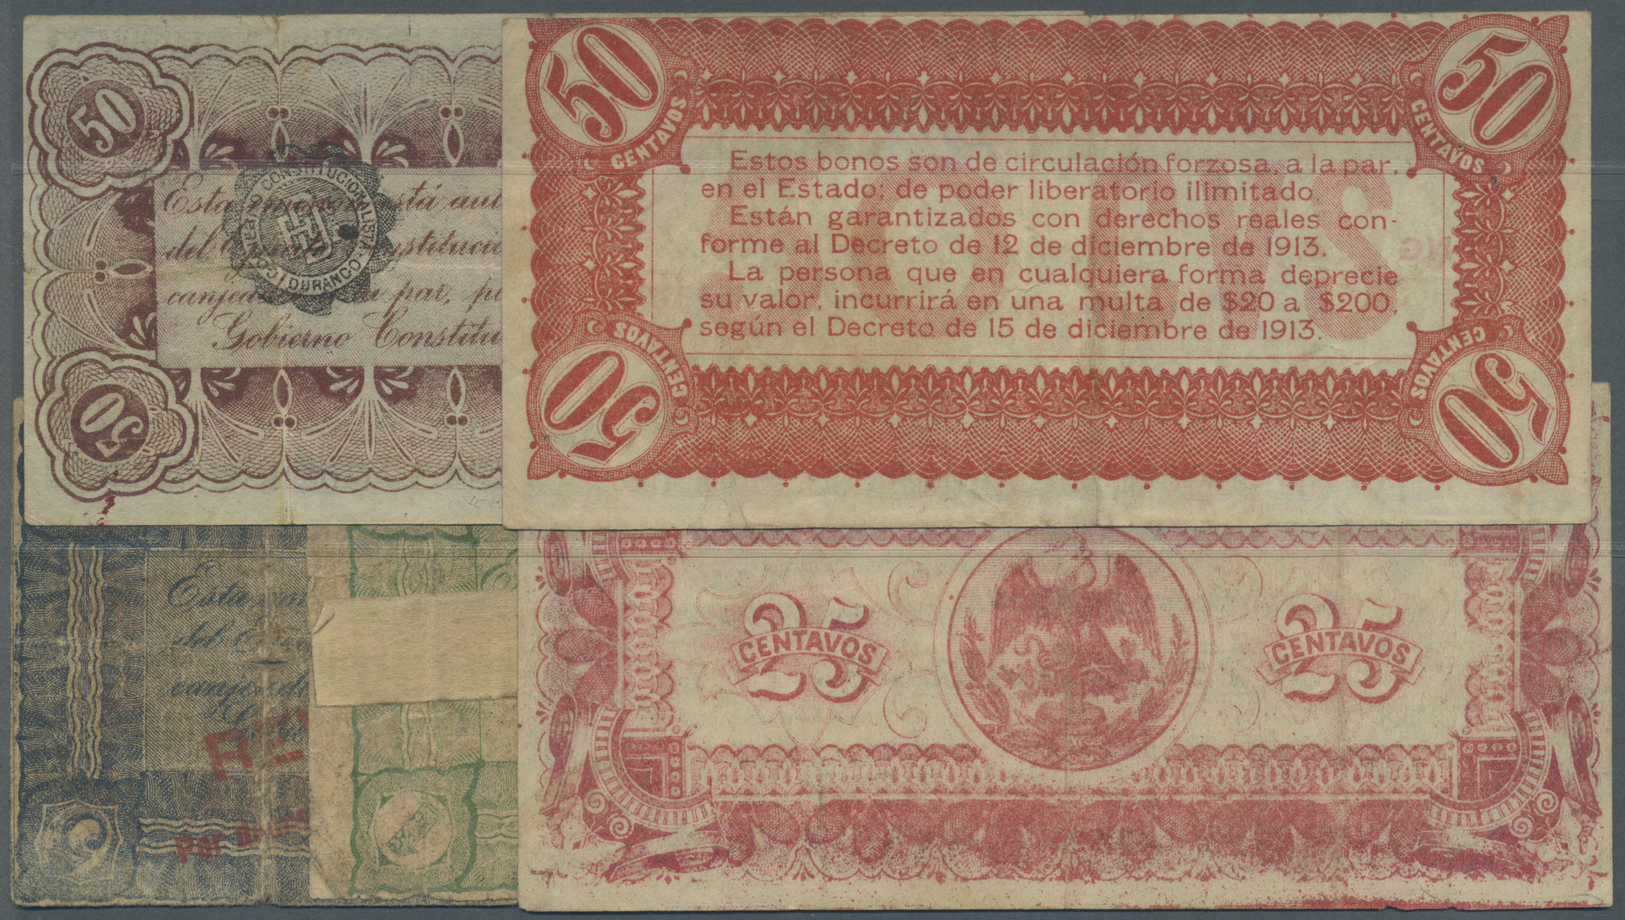 01724 Mexico: El Estado De Durango Set Of 5 Banknotes Containing 1 Peso 1914, 5 Pesos 1914, 25 Centavos ND, 50 Centavos - Mexico